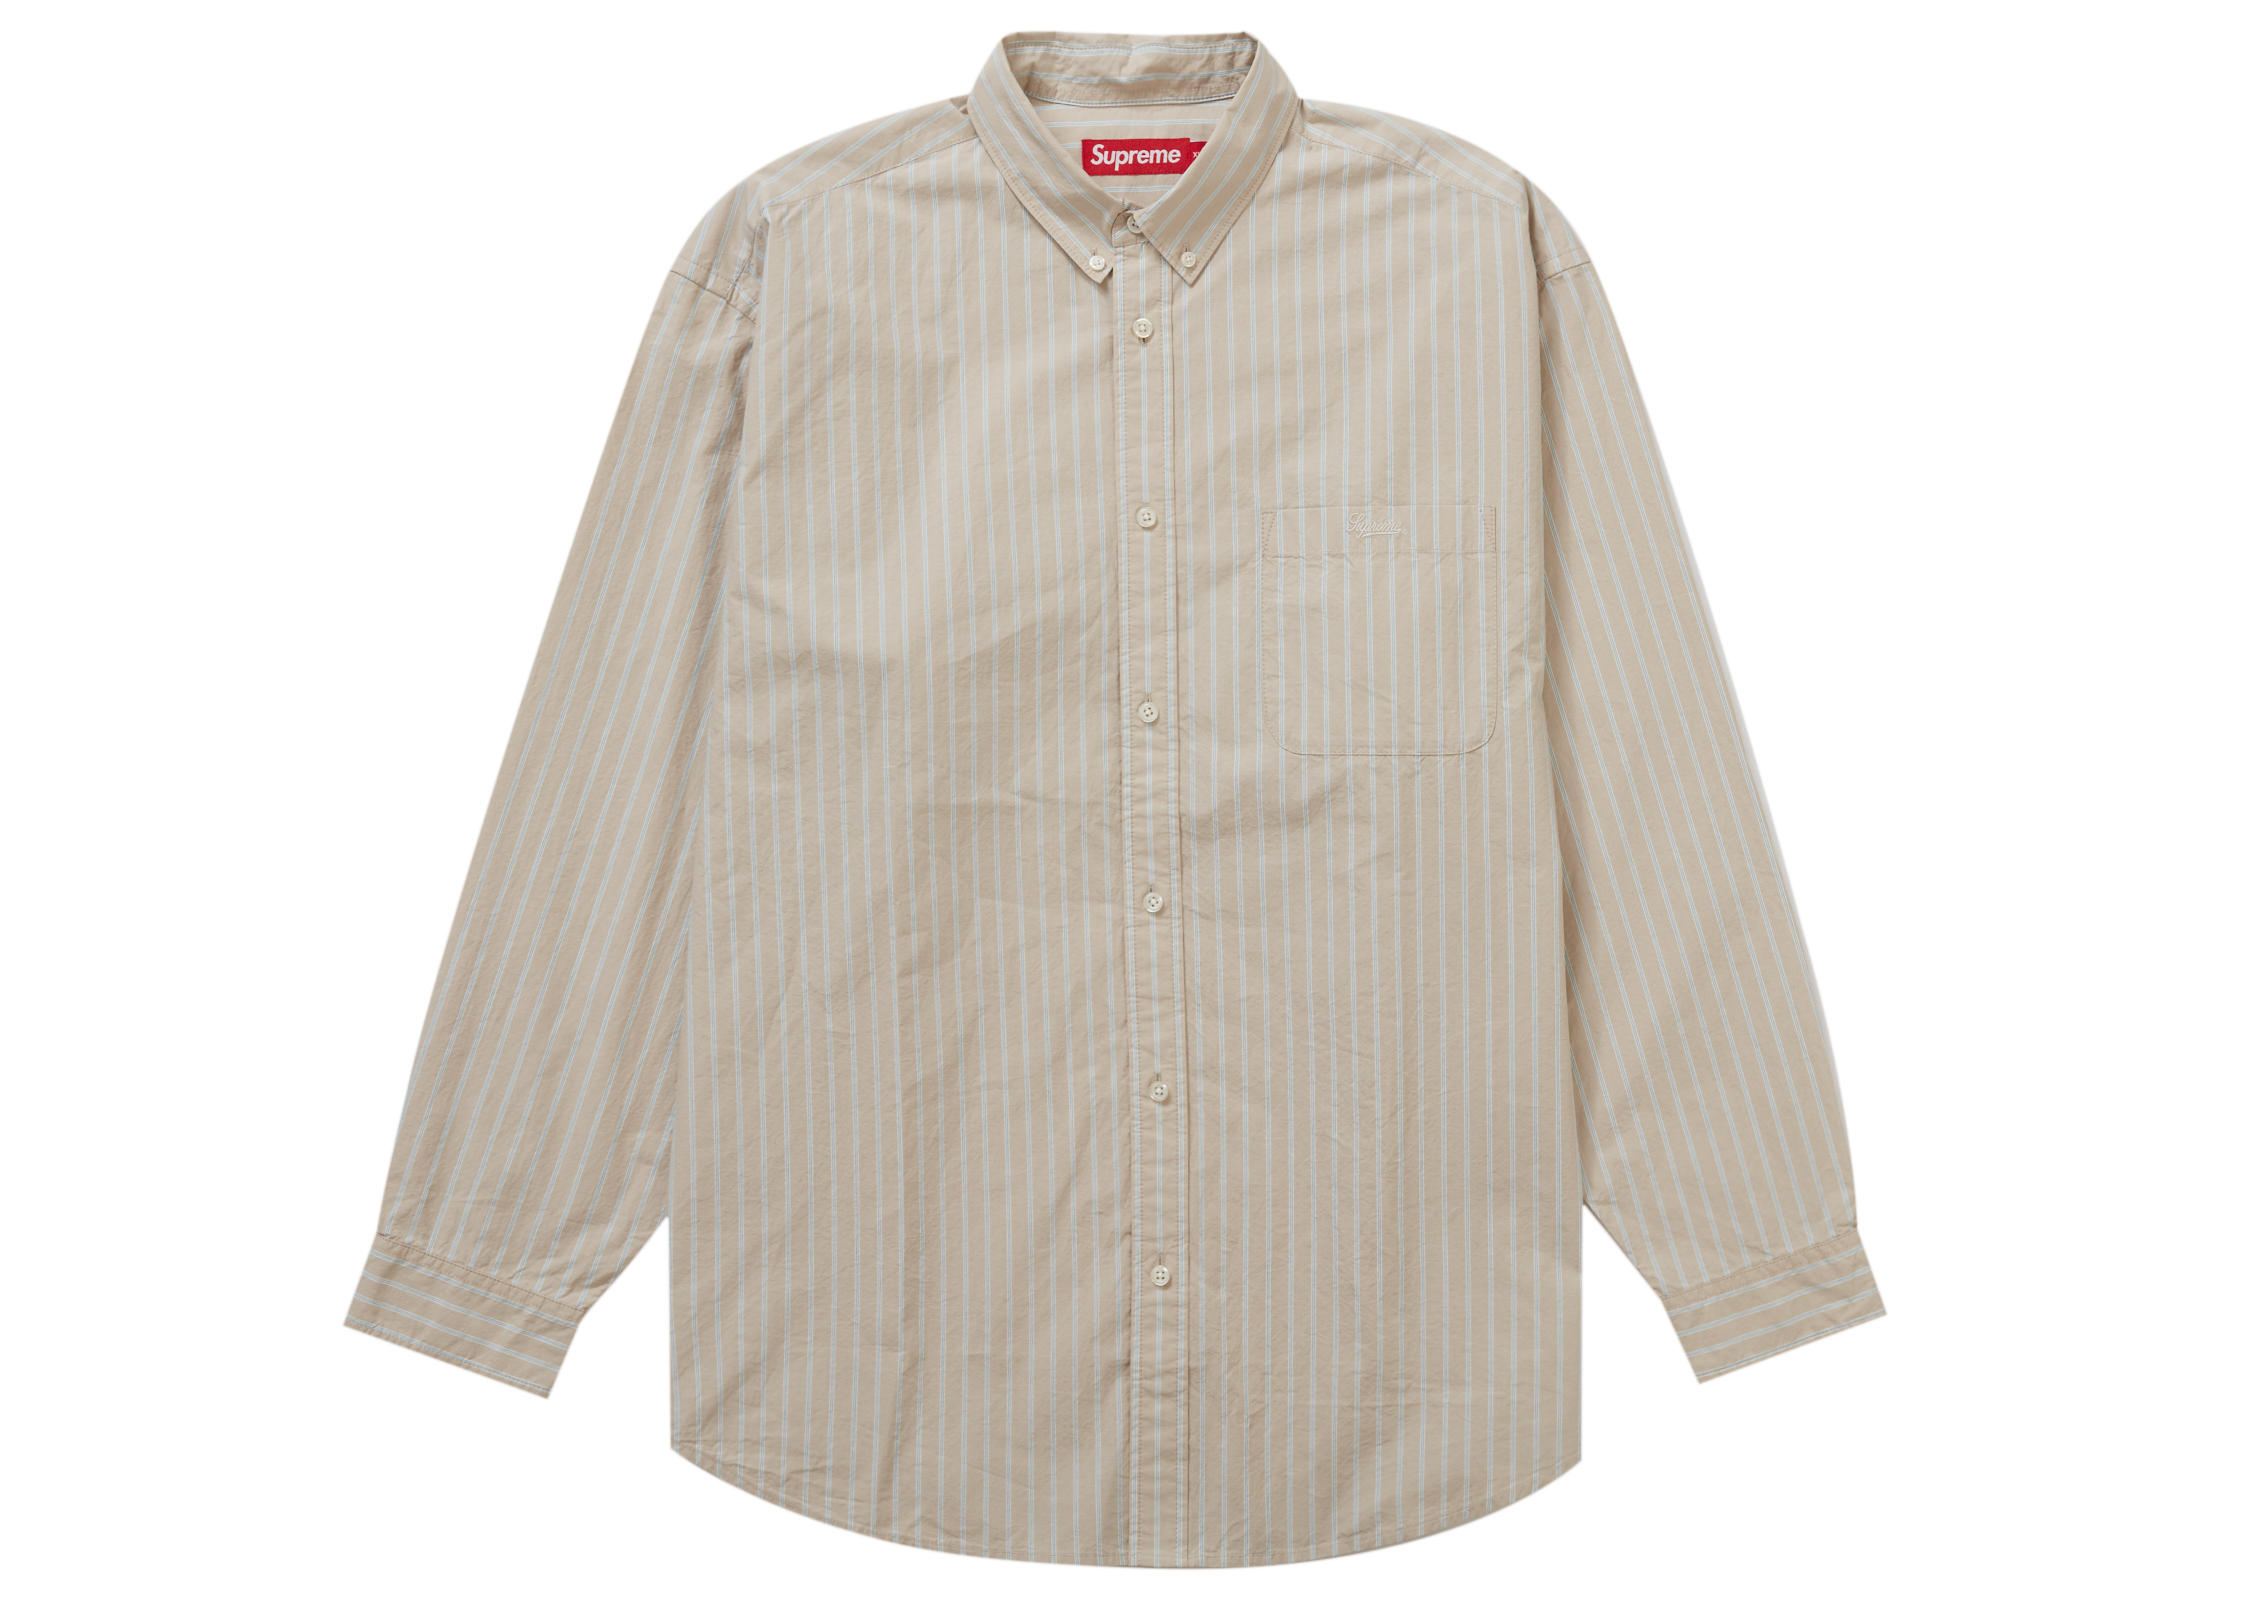 13,000円【正規品】Supreme Loose Fit Stripe Shirt tan